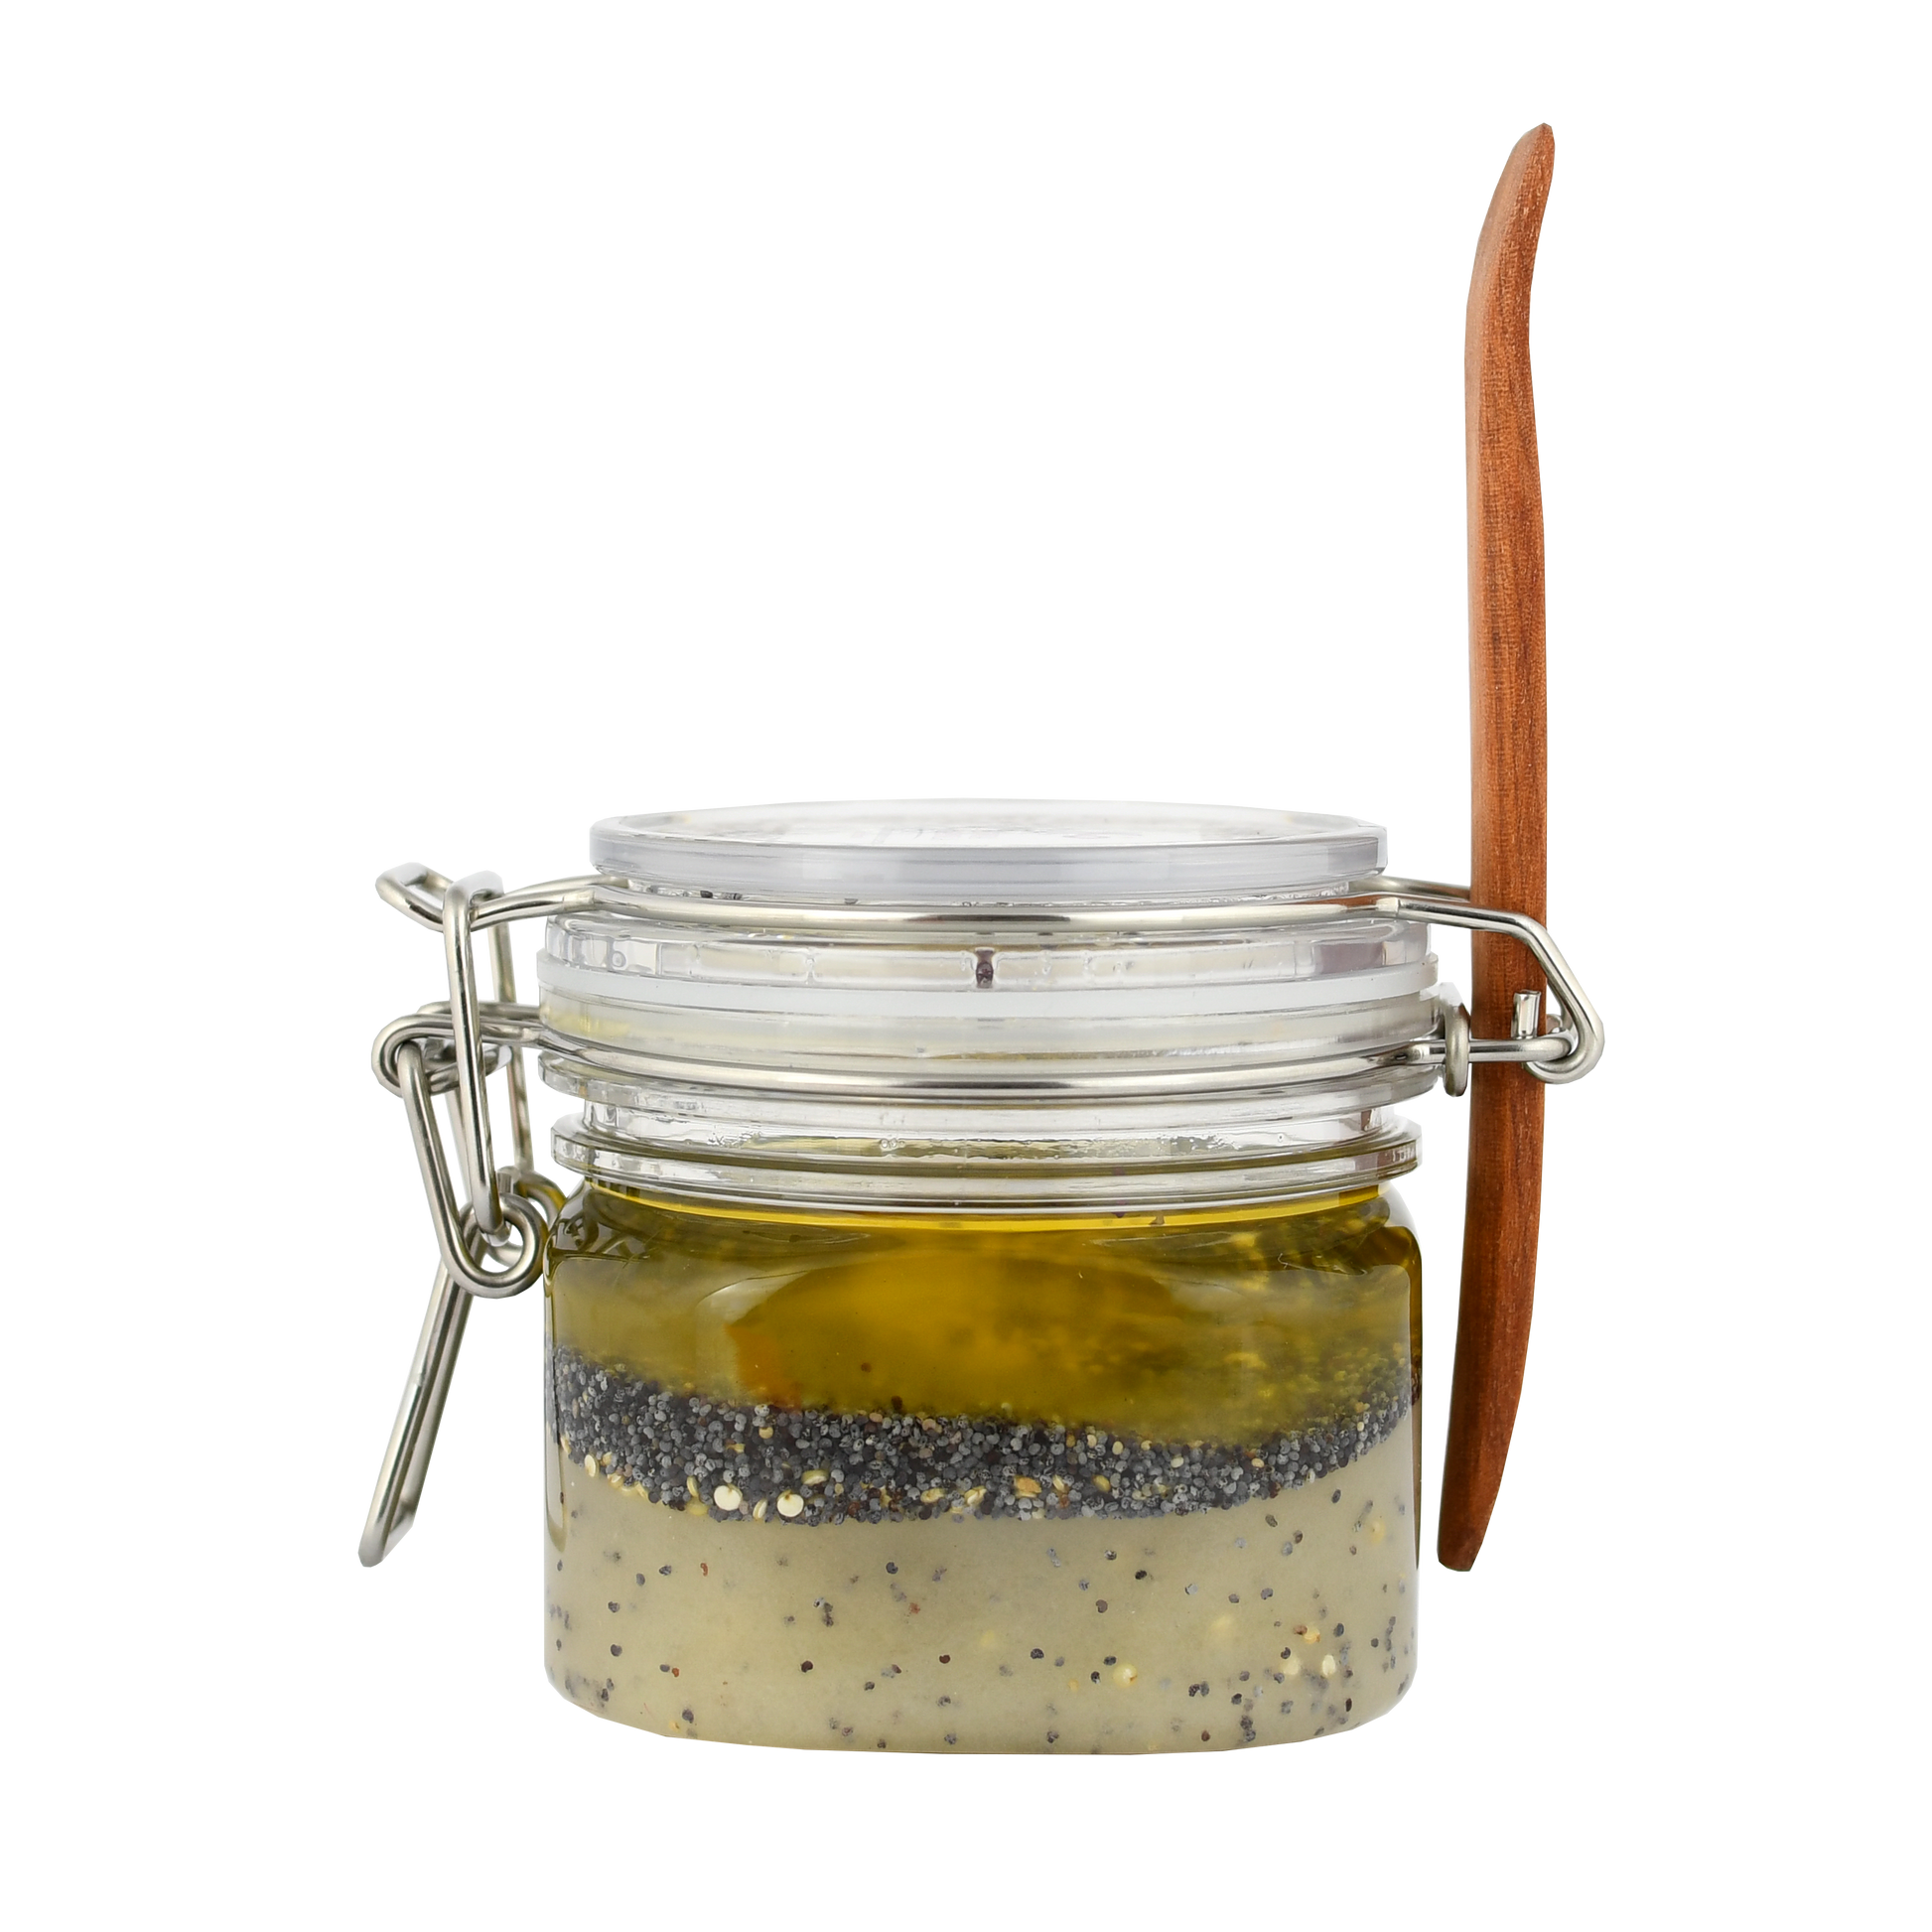 ¿Necesitas exfoliar e hidratar tu piel? ¡Este exfoliante de quinoa amapola es ideal para eso, aparte tiene un efecto iluminador! Hecho con quinoa, amapolas, aceite de almendras, y aceites esenciales, sólo ingredientes naturales. En Ko desarrollamos cosmética natural.